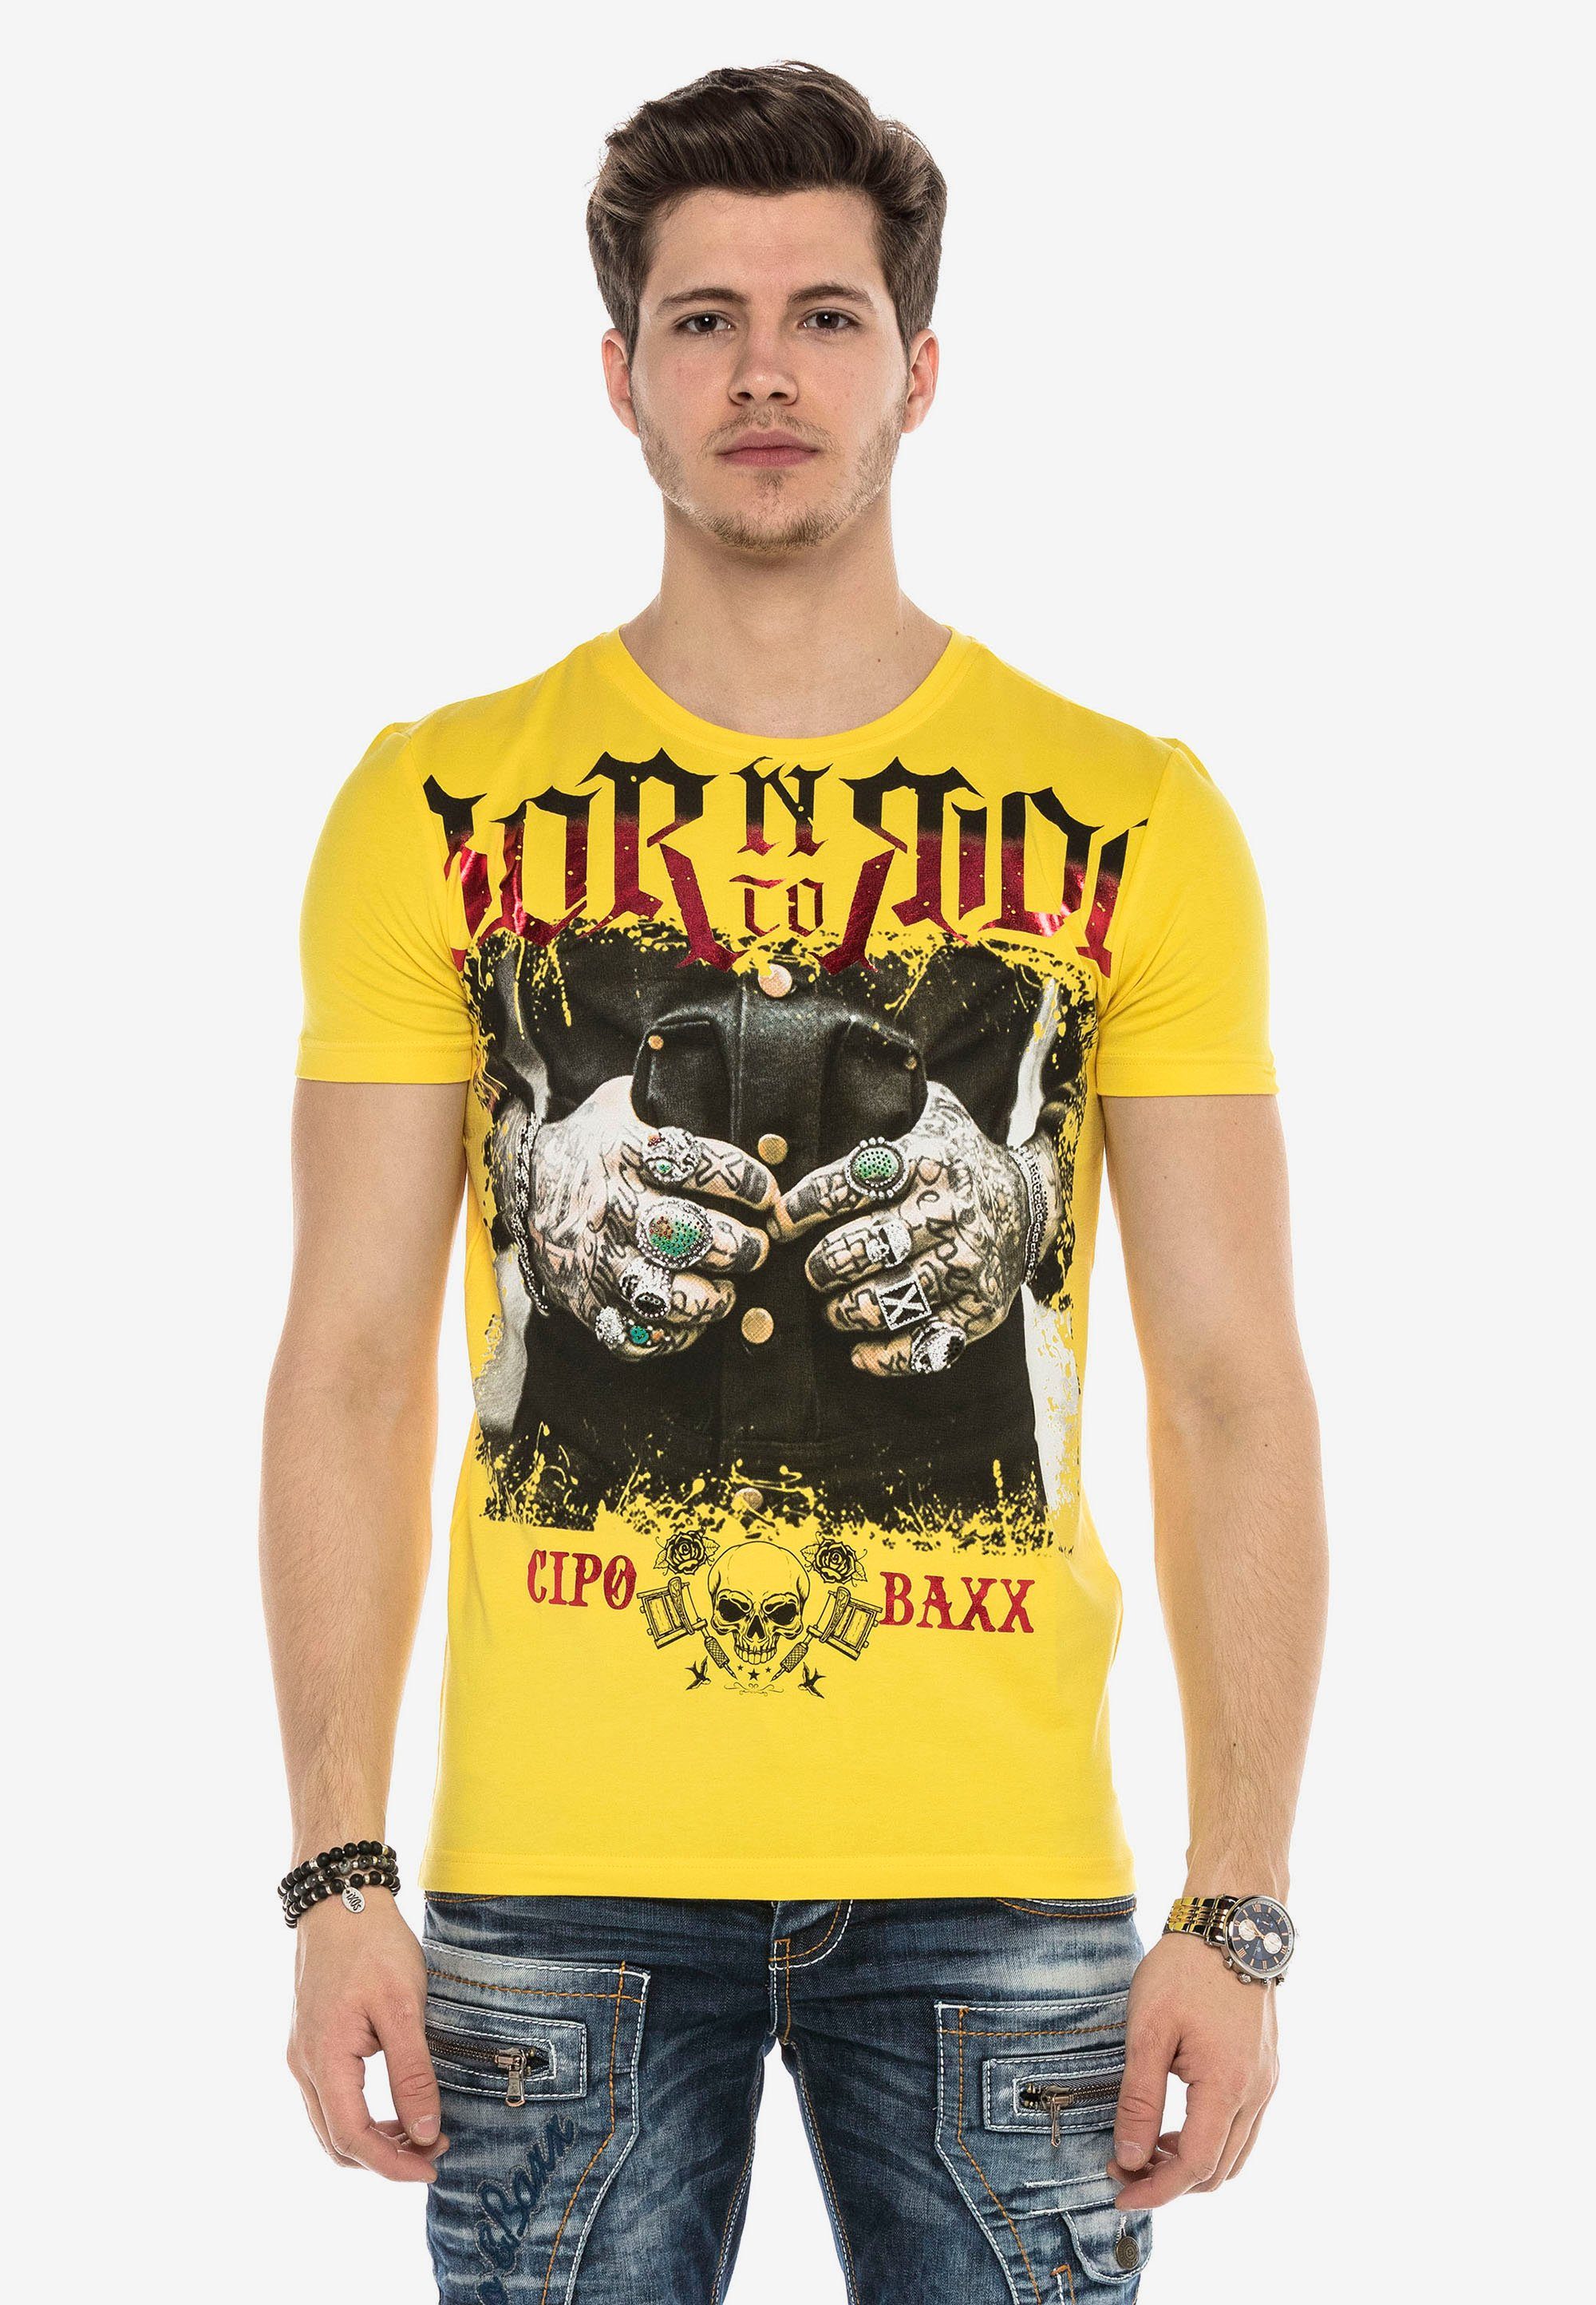 & Baxx mit gelb T-Shirt Cipo Grafikprint stylischem